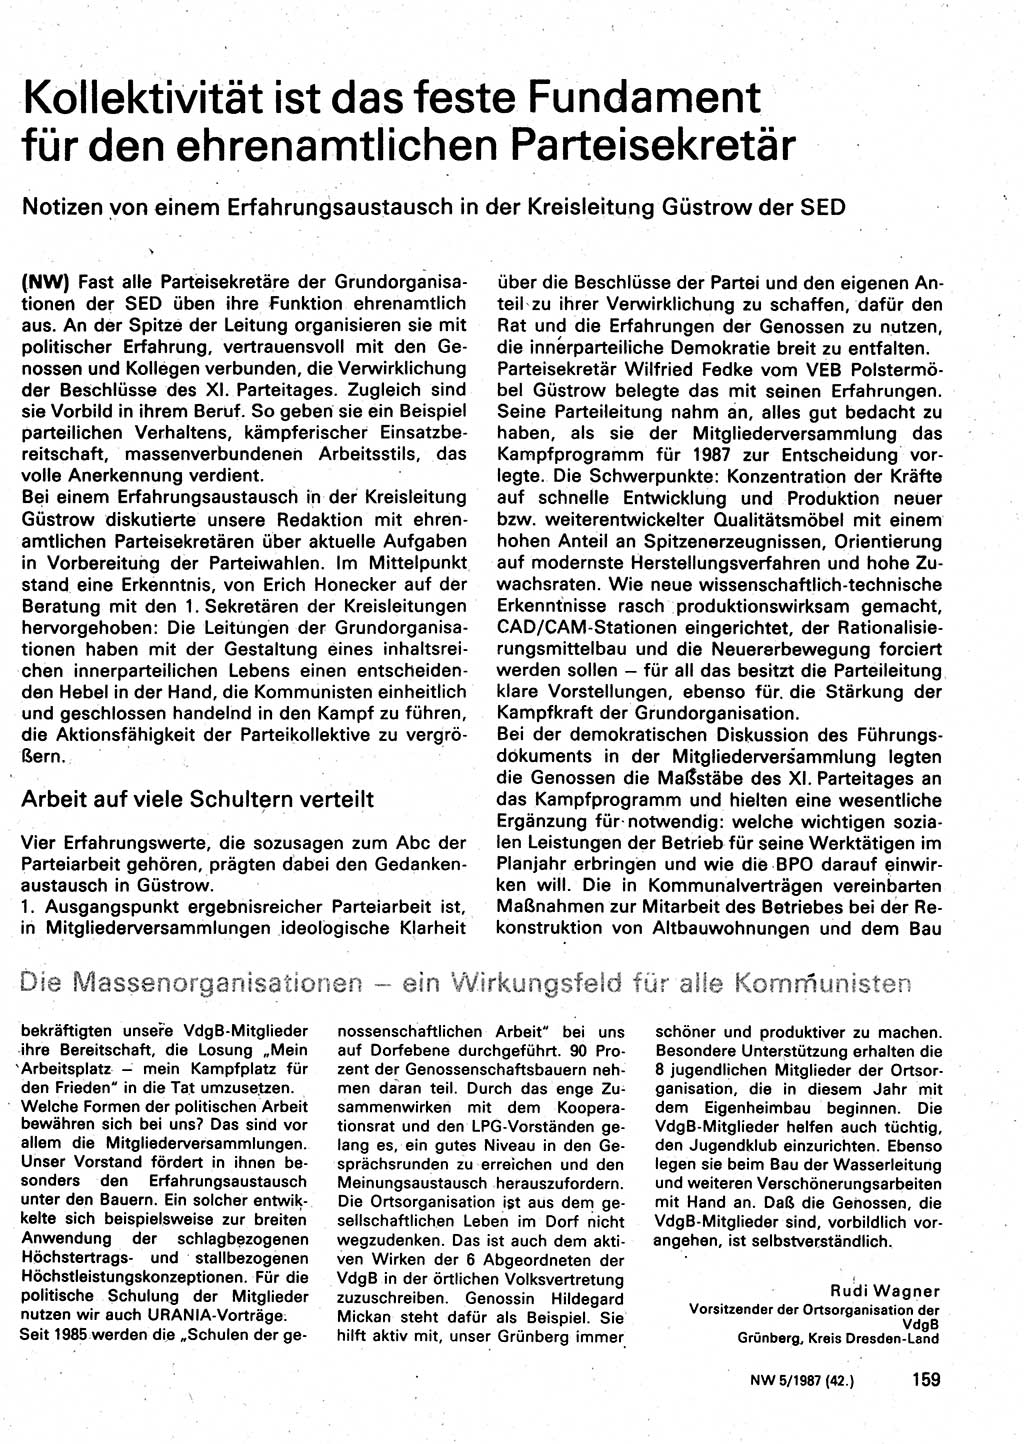 Neuer Weg (NW), Organ des Zentralkomitees (ZK) der SED (Sozialistische Einheitspartei Deutschlands) für Fragen des Parteilebens, 42. Jahrgang [Deutsche Demokratische Republik (DDR)] 1987, Seite 159 (NW ZK SED DDR 1987, S. 159)